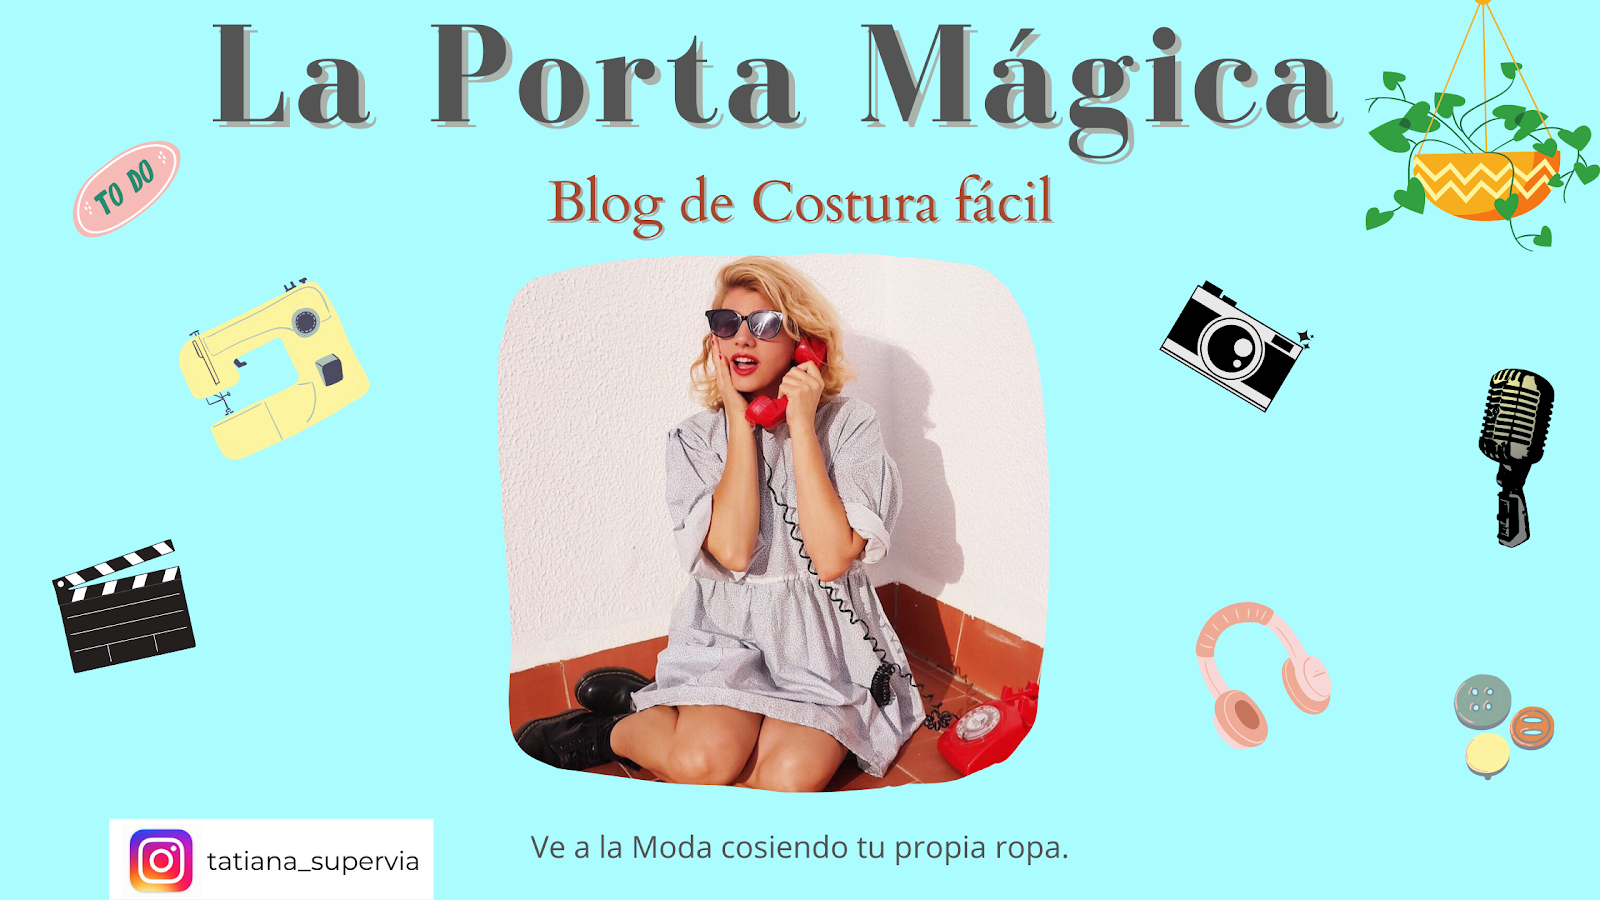 La Porta Magica - Ve a la moda cosiendo tu propia ropa. Blog de costura facil.